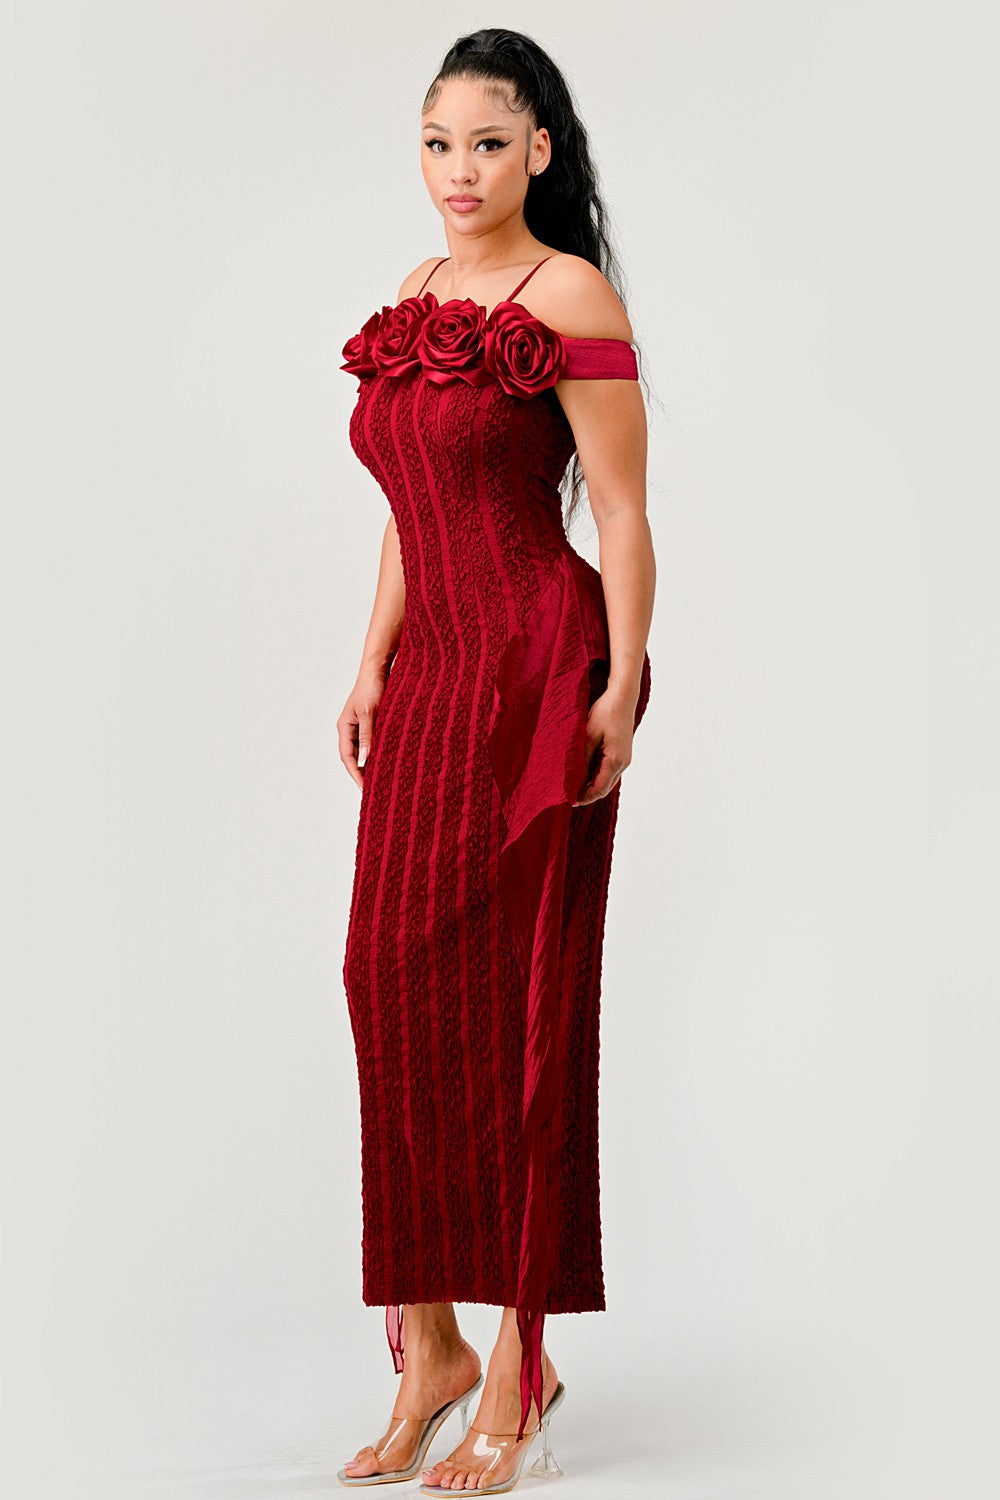 Elegant Roses Dress - Athina Wholesale